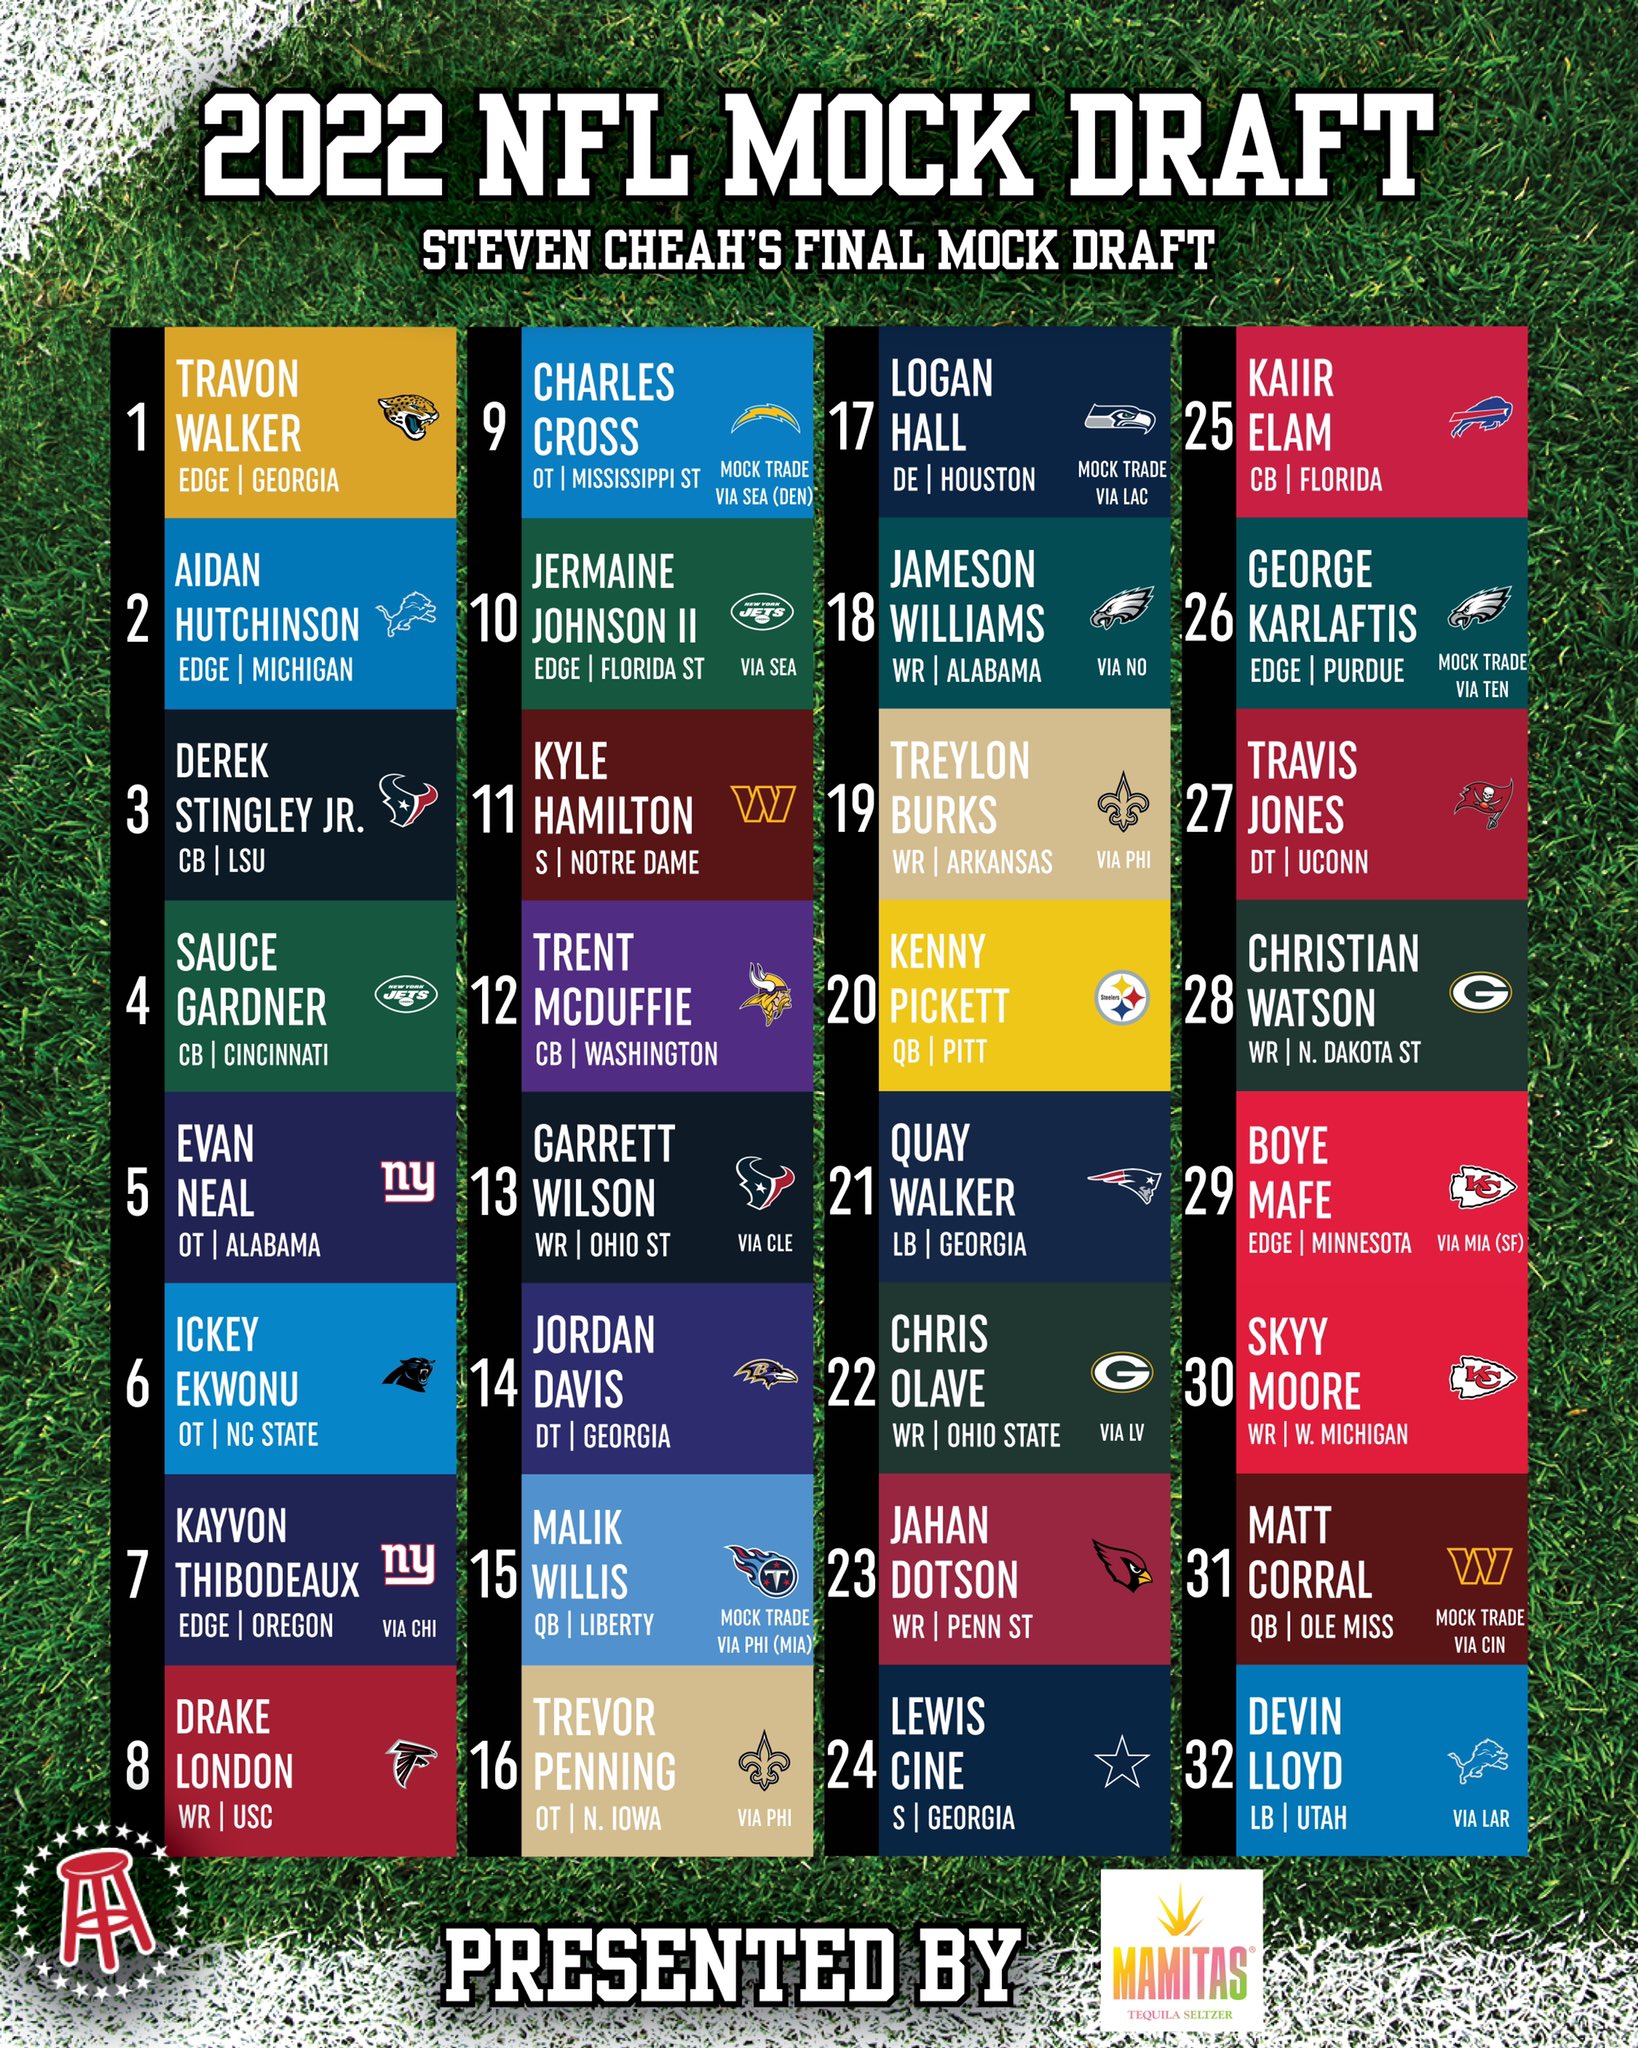 Steven Cheah's Full 2021 NFL Mock Draft 1.0